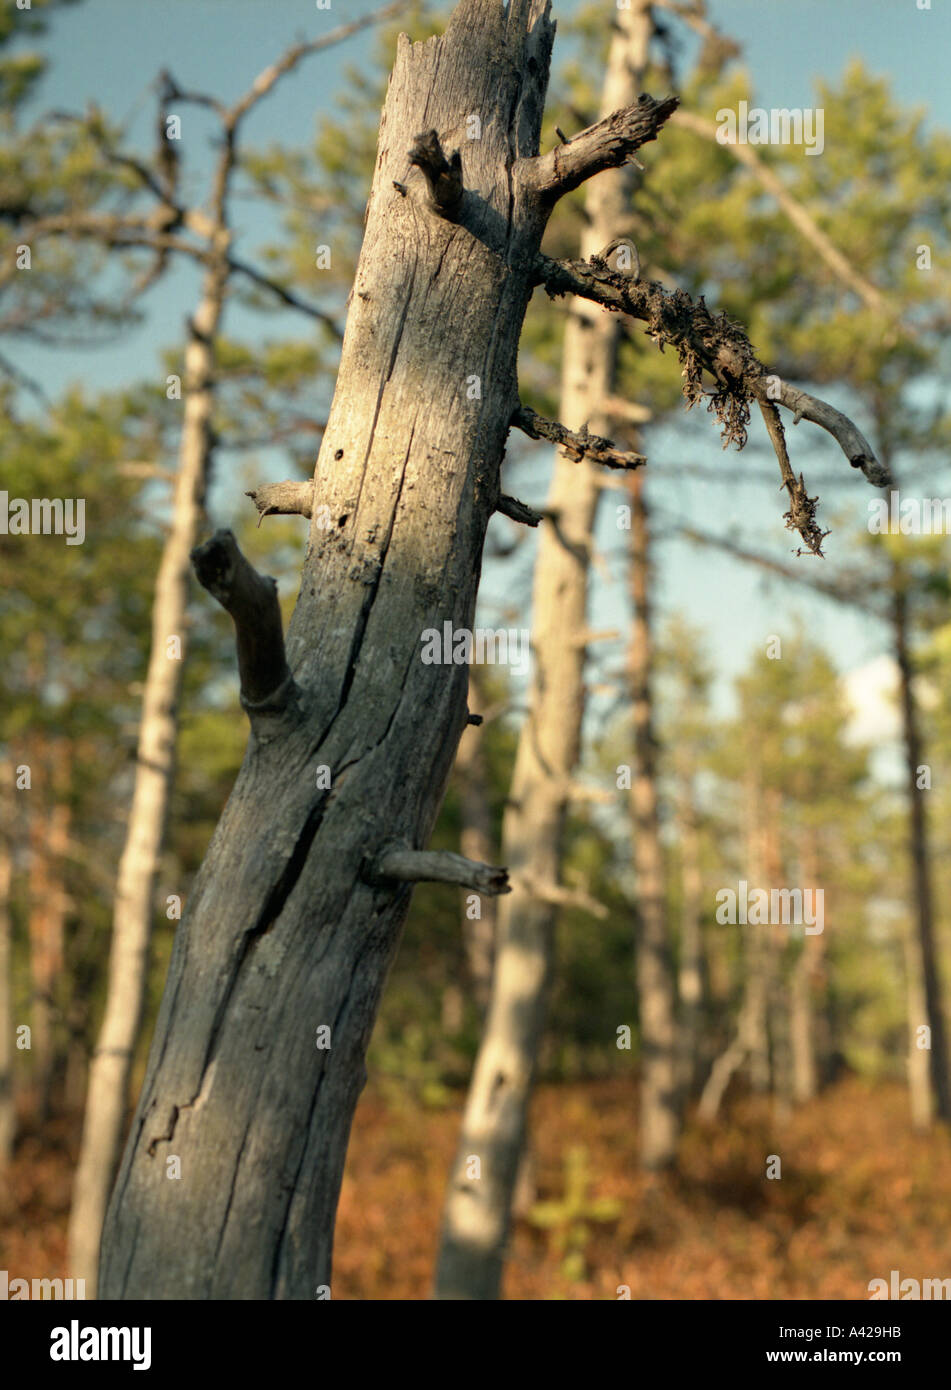 Bog foresta In Soomaa National Park, Estonia, Pärnu county Foto Stock